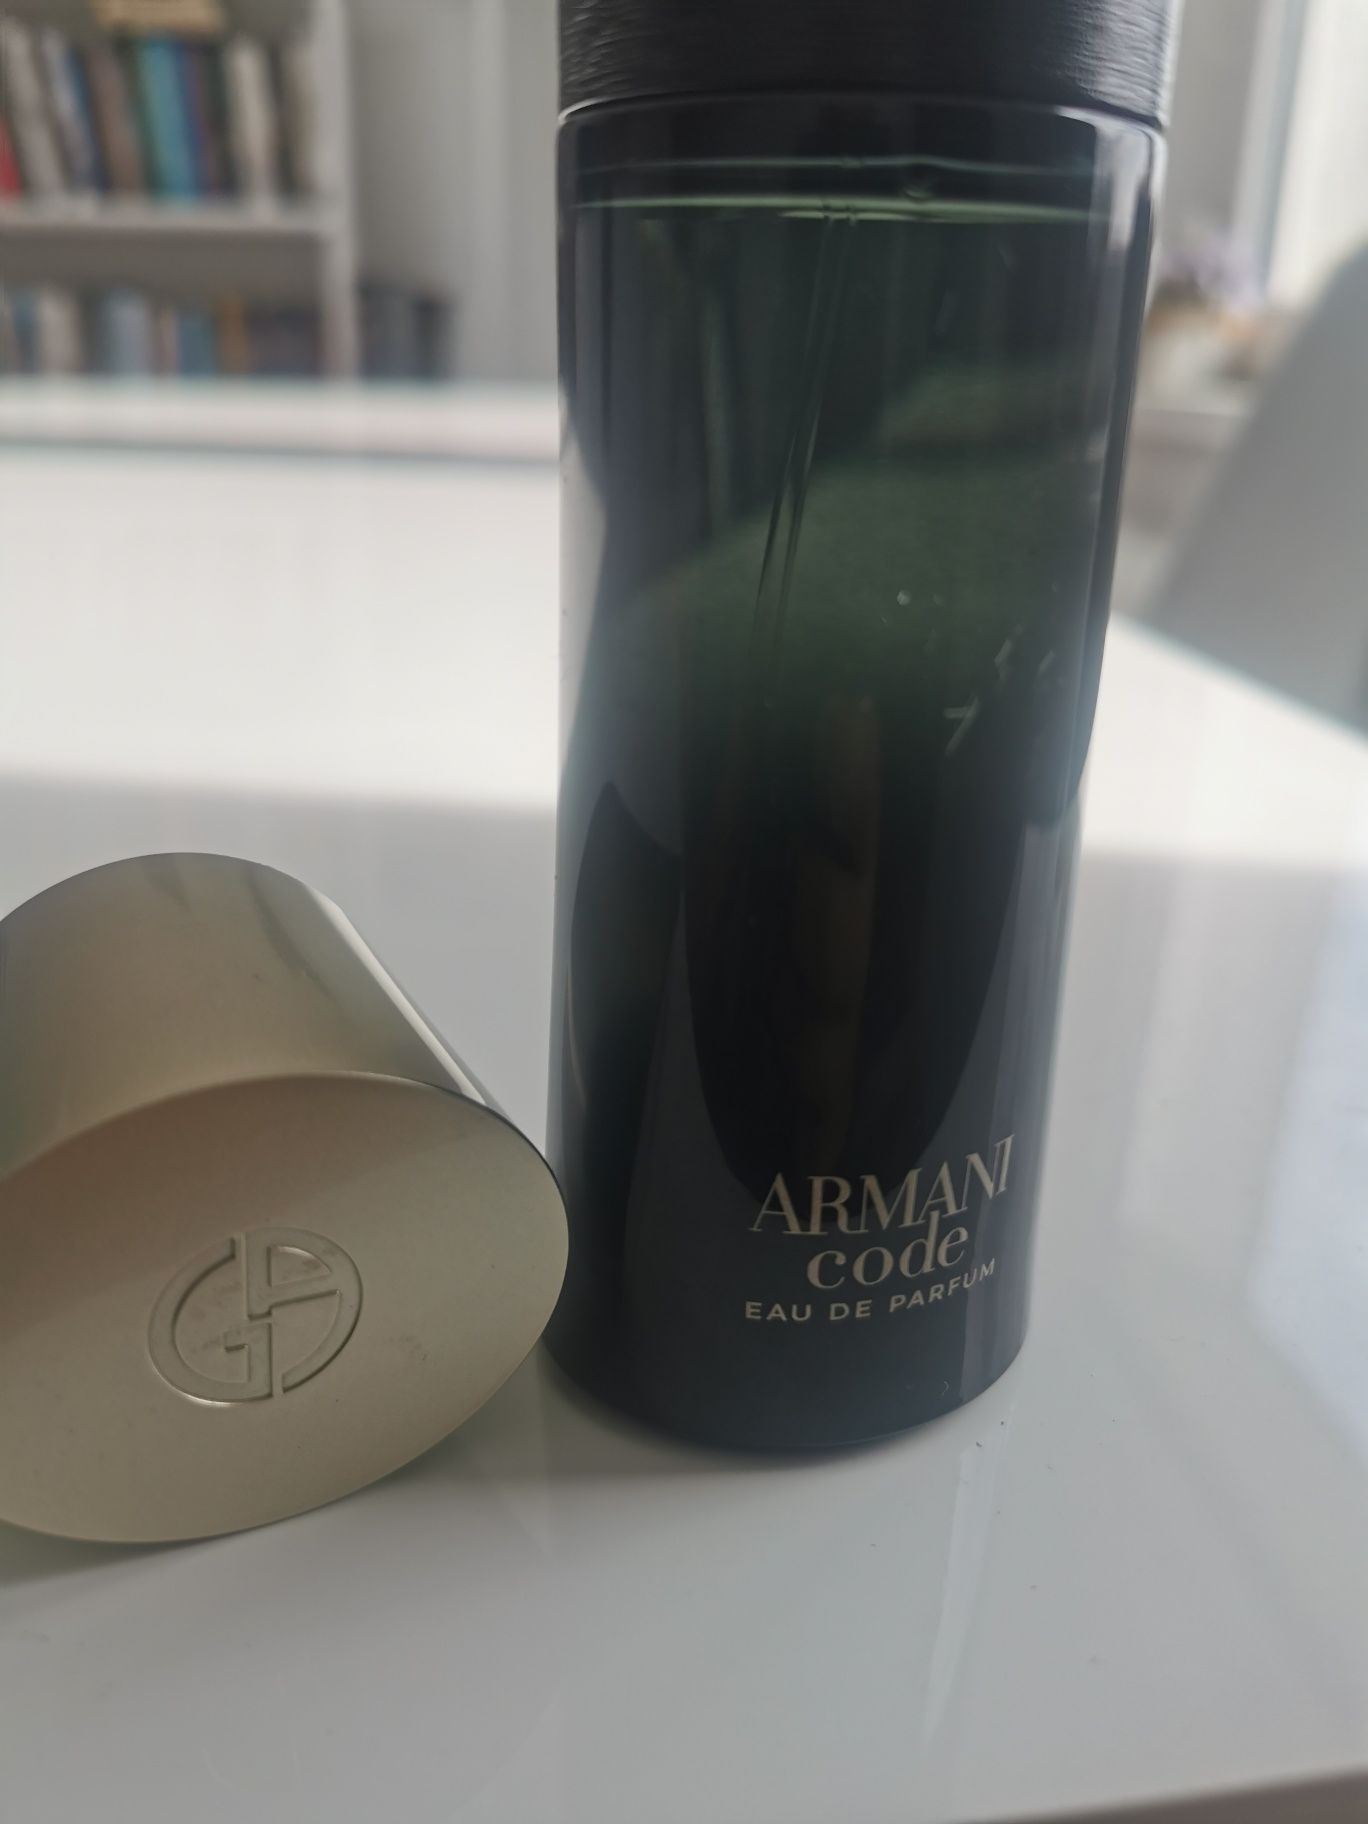 Armani Code eau de parfum.